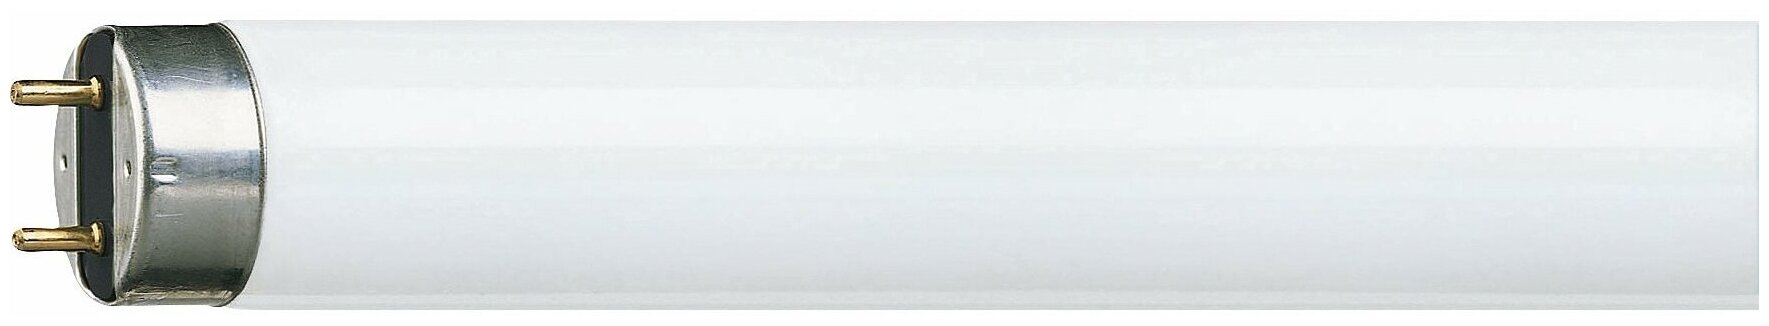 1шт. - Лампа линейная люминесцентная ЛЛ 36вт TLD Super80 36/840 G13 белая / PHILIPS Lightning; арт. 927921084055; оригинал / - комплект 1шт